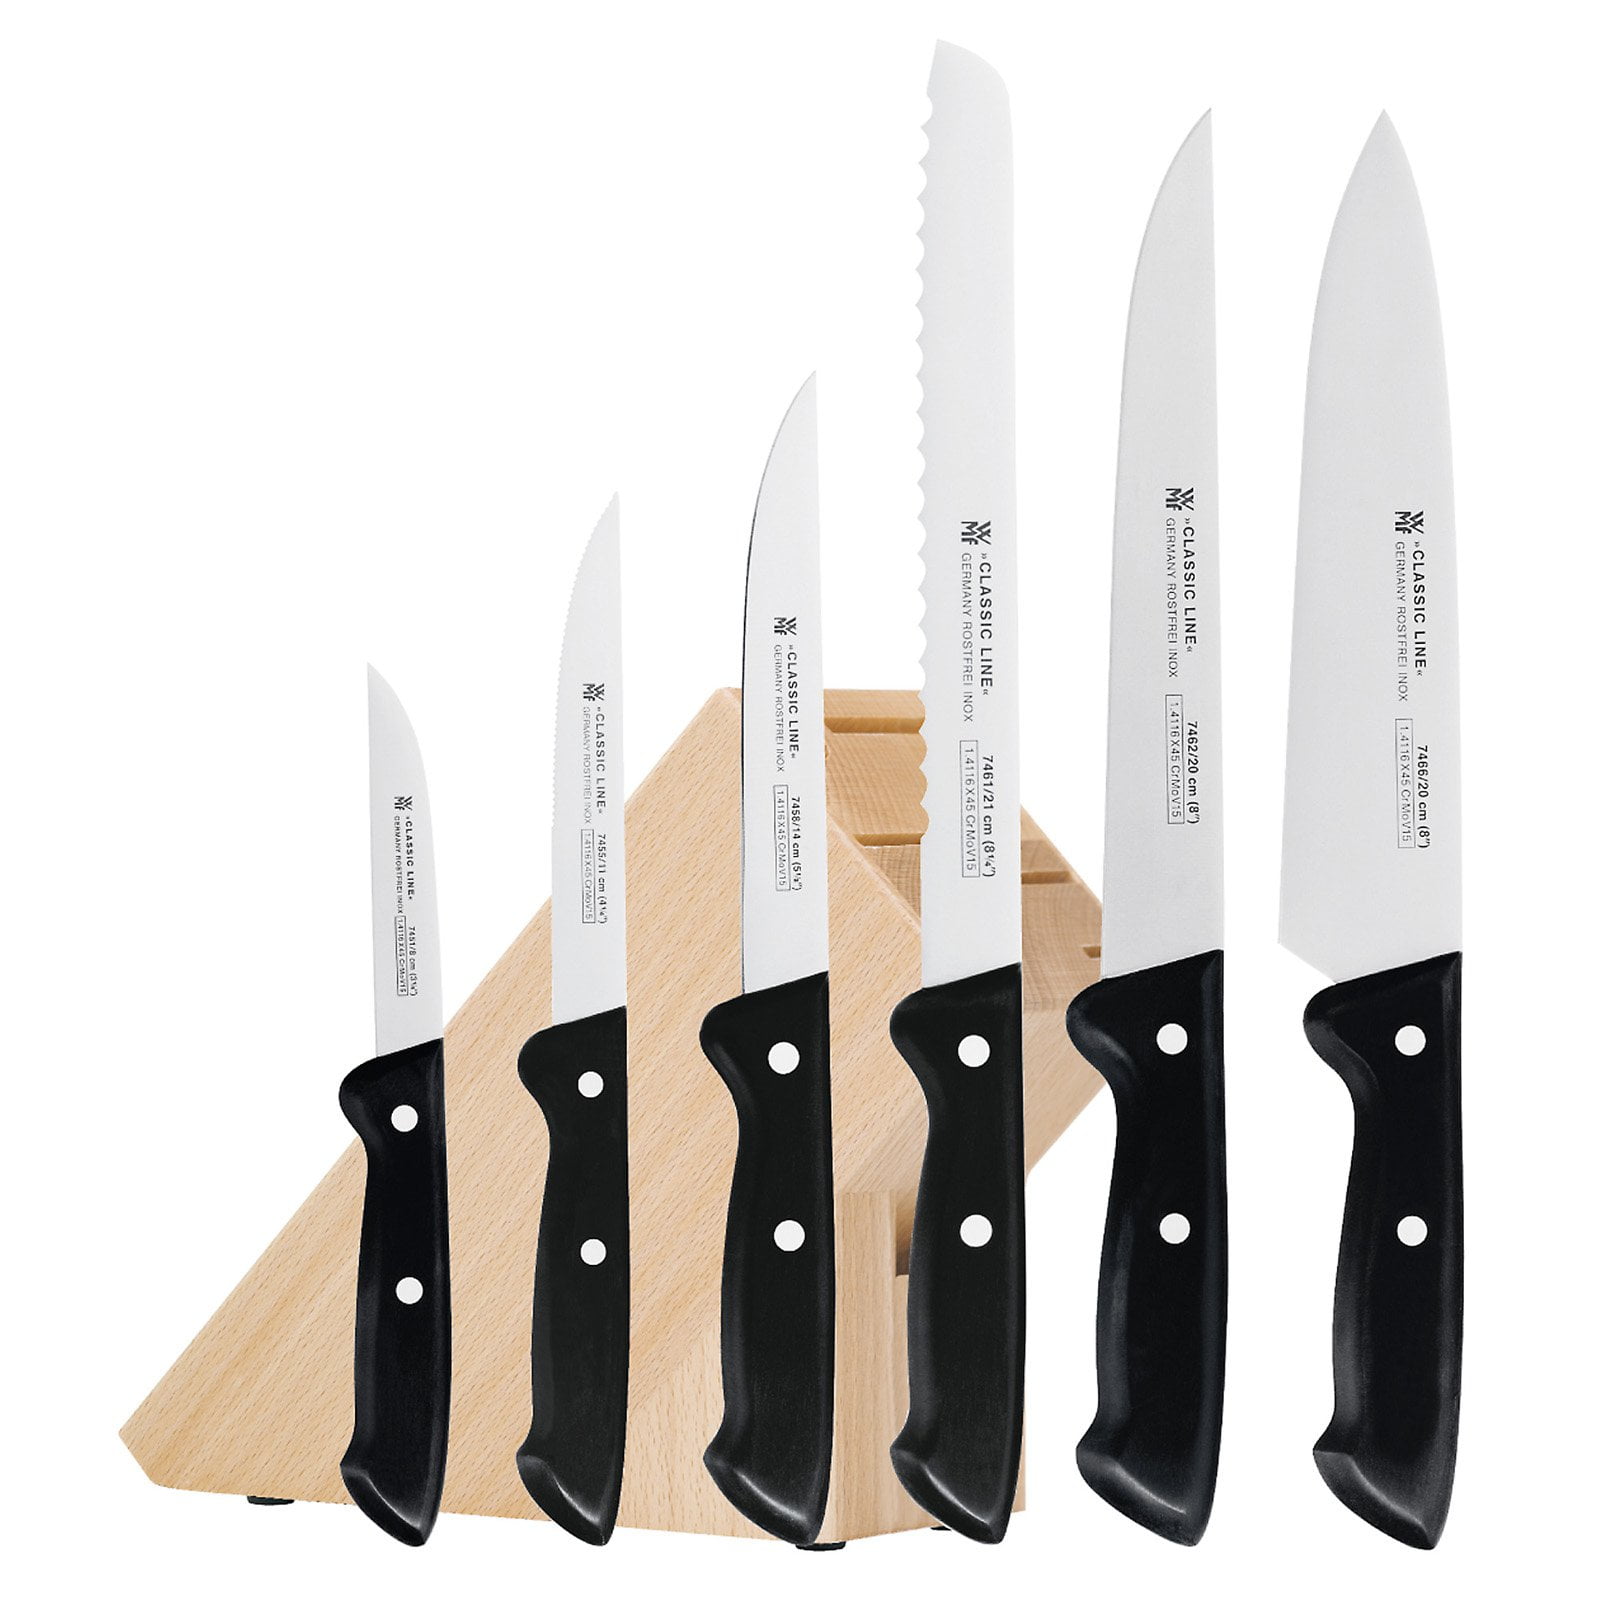 WMF Classic Knives 7 Set - Walmart.com